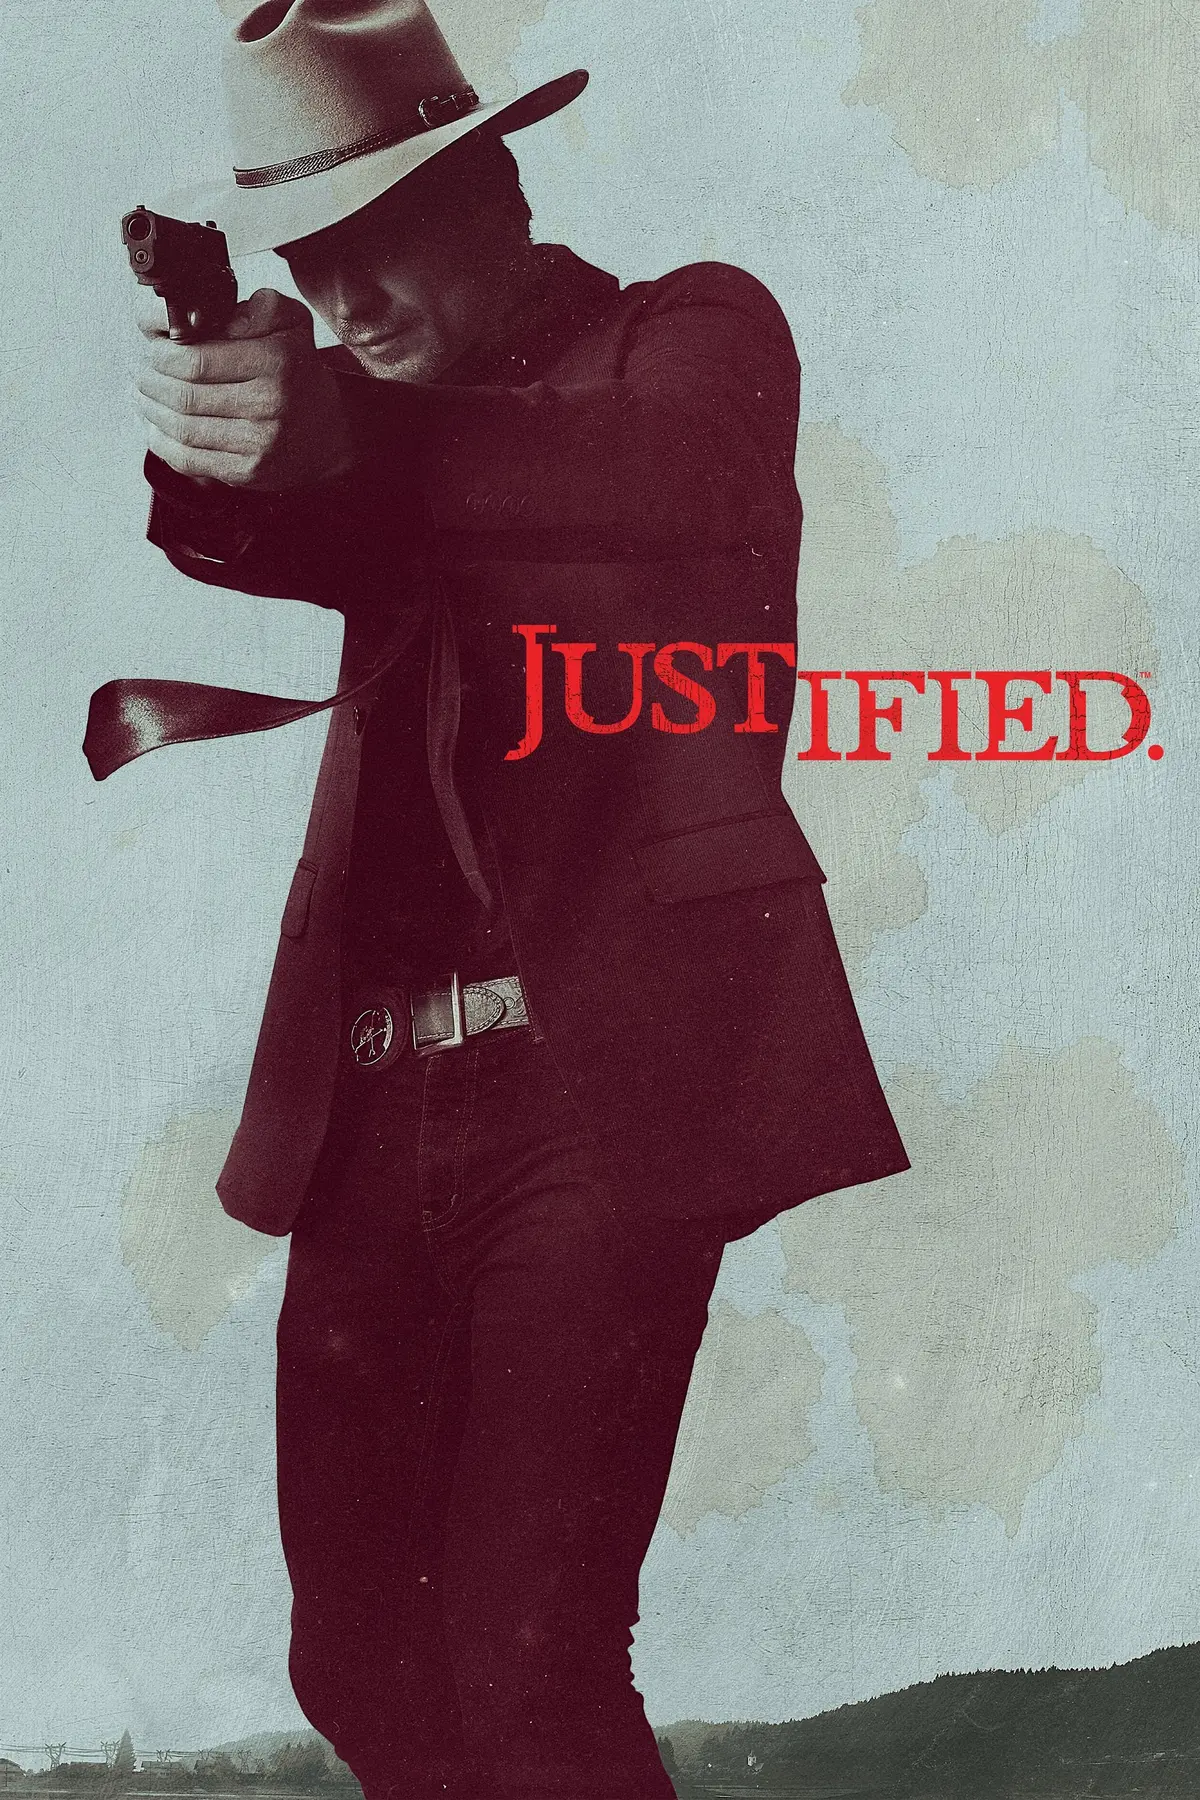 Justified S06E07 La chasse